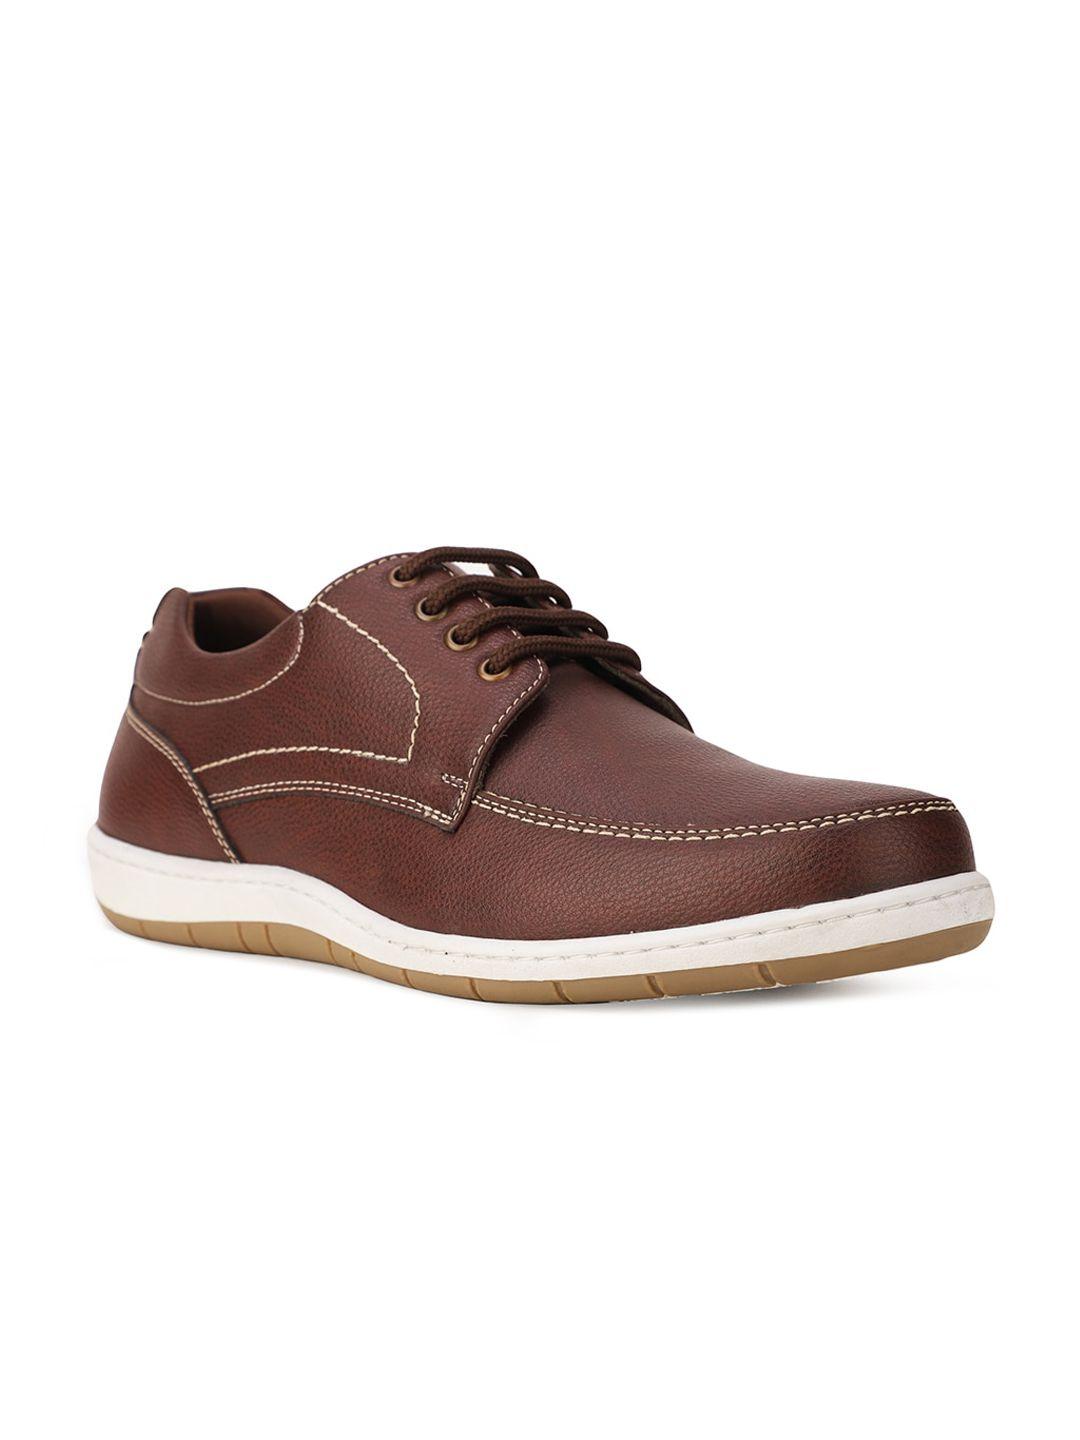 bata-men-brown-casual-boat-shoes